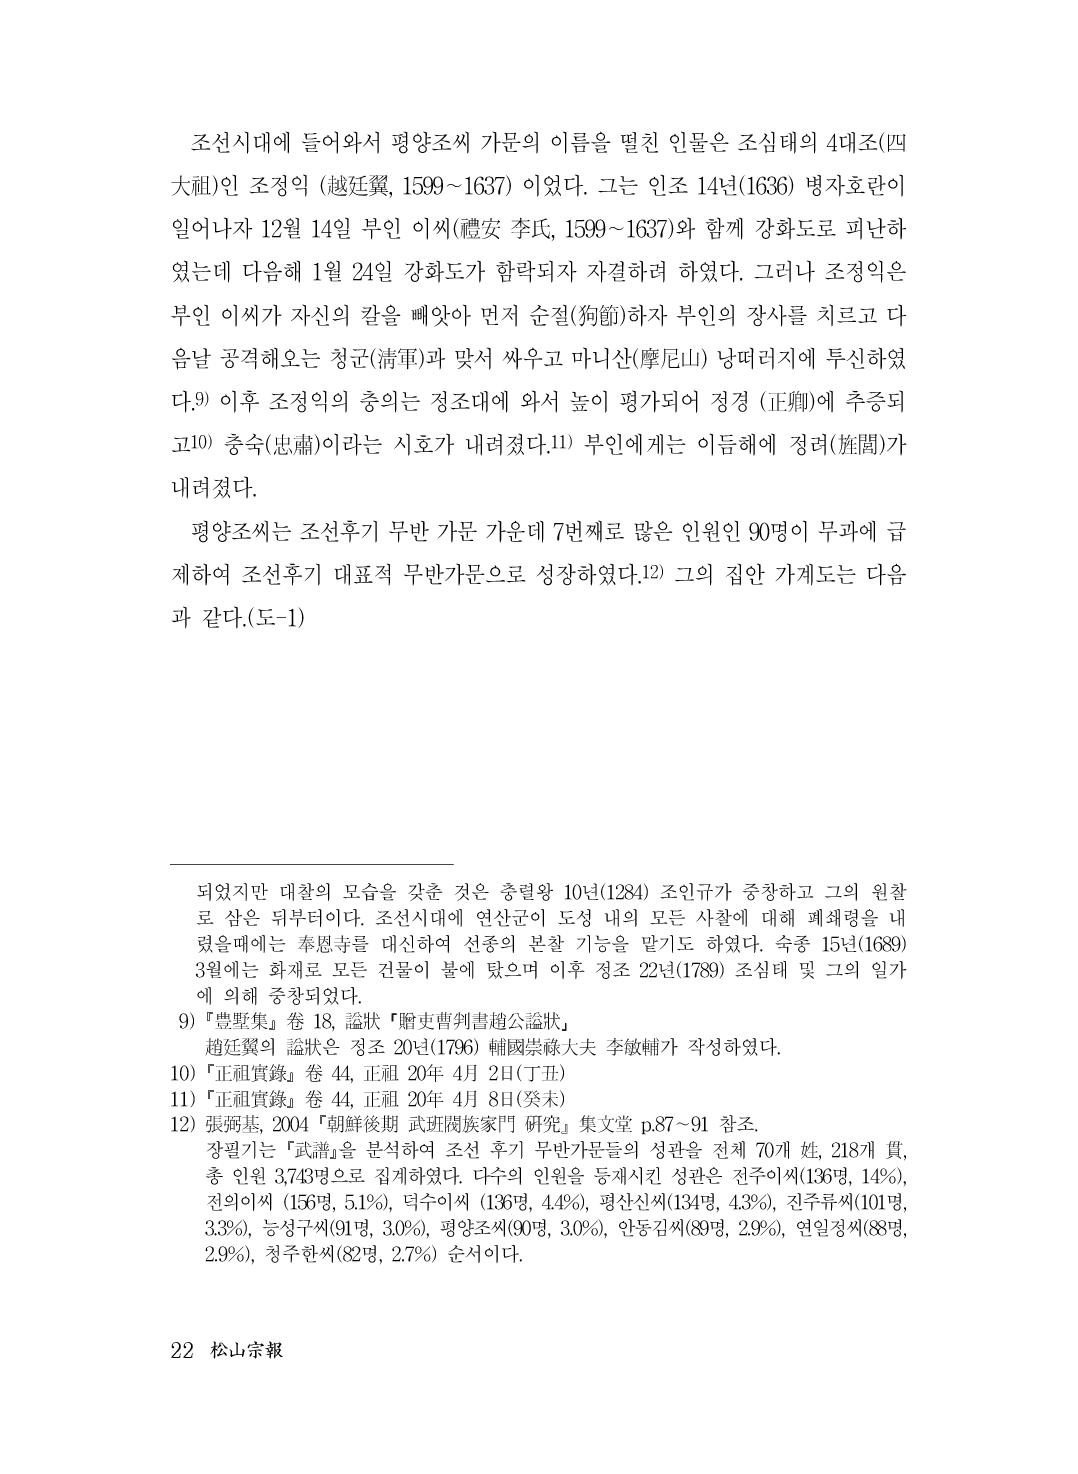 (전체) 송산종보(27호)(최종)_23.jpg